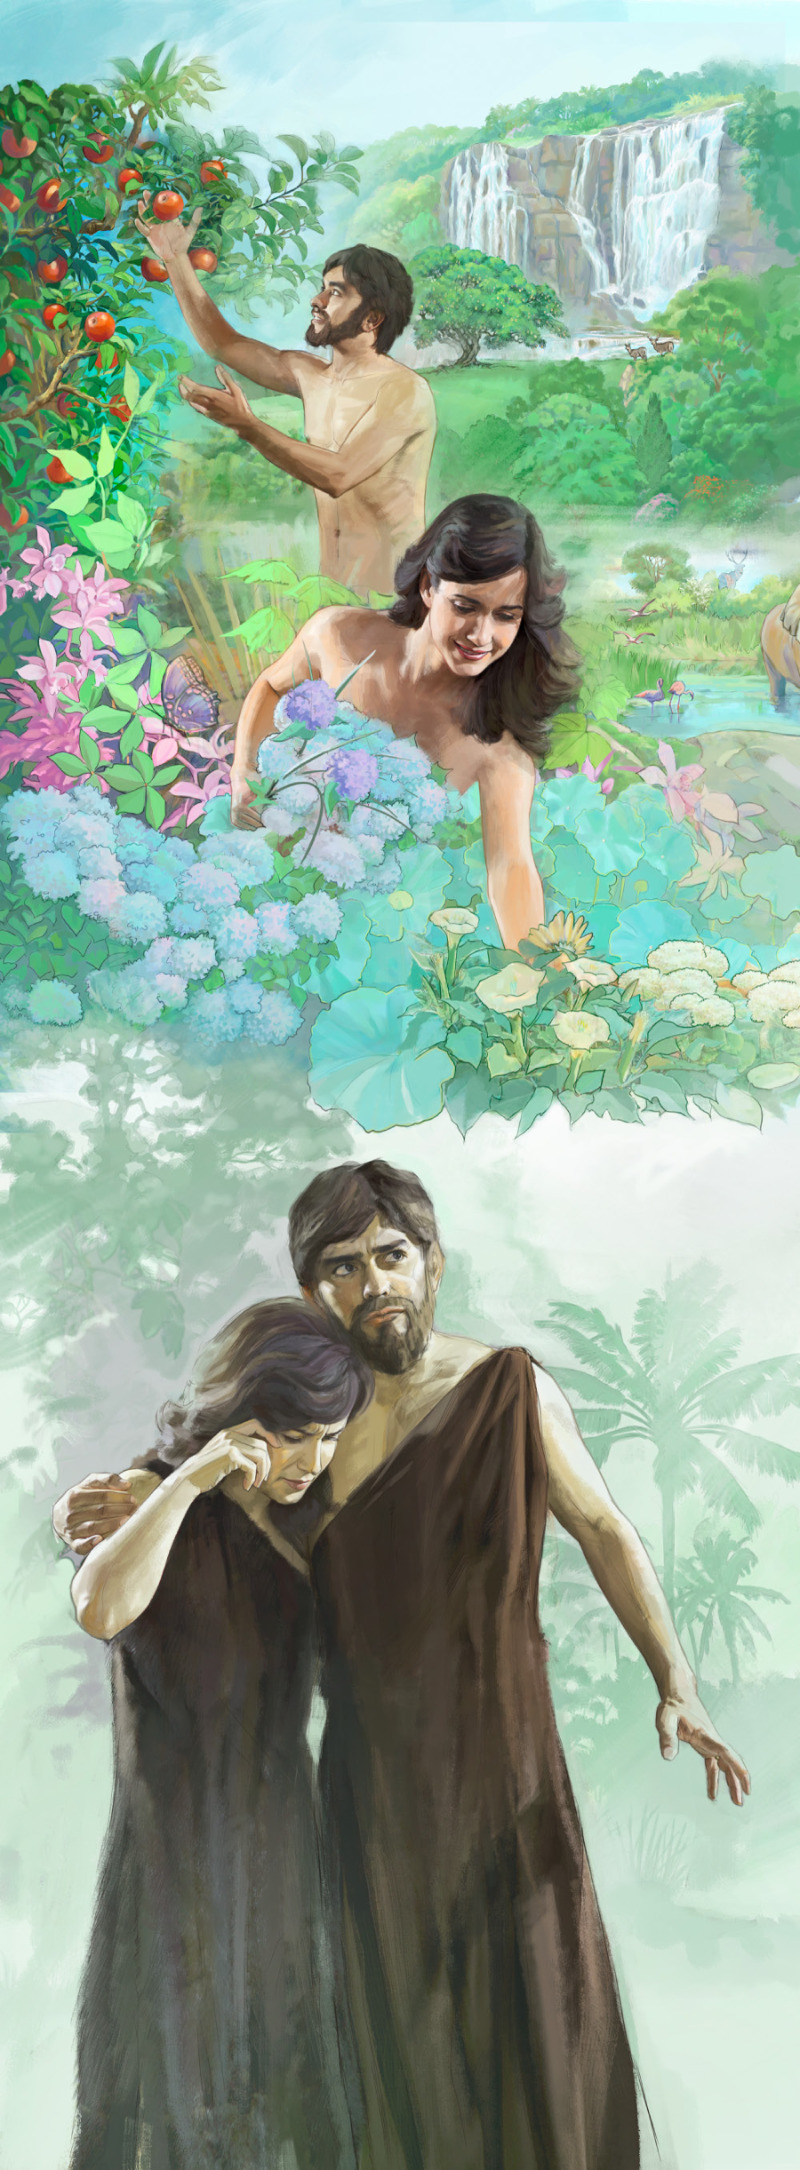 Adamo ed Eva nel giardino di Eden e poi cacciati dal giardino